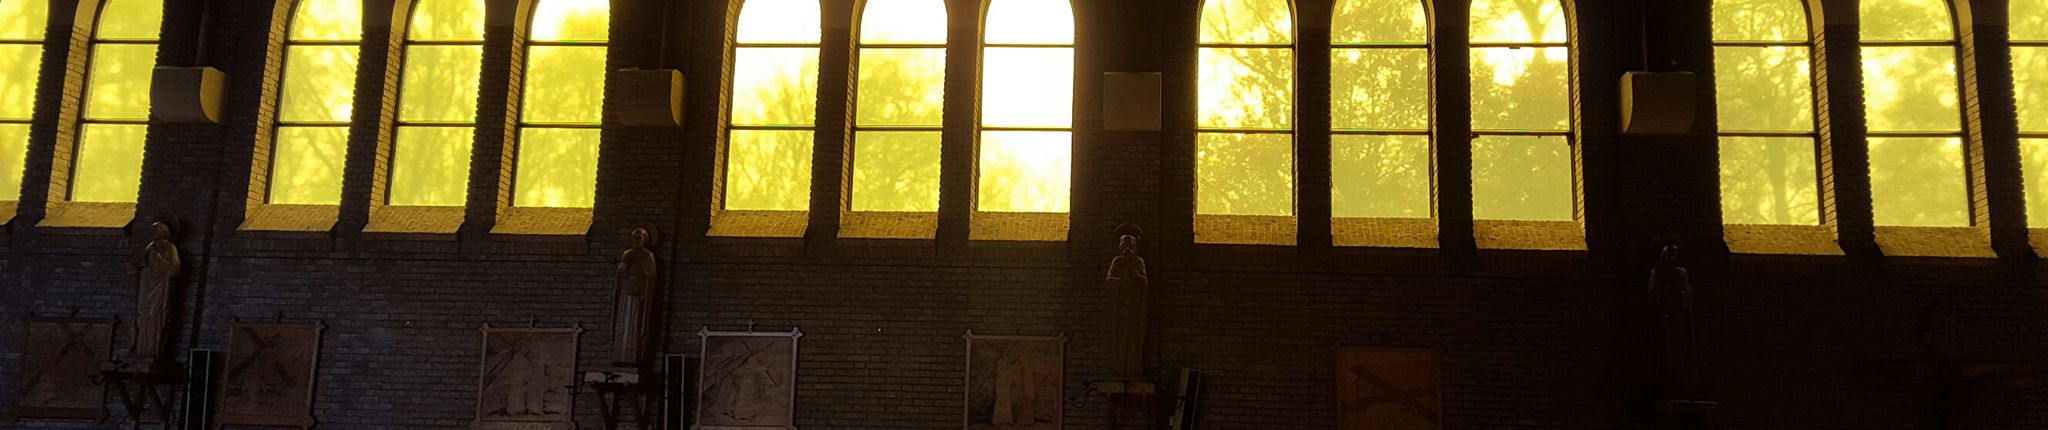 De gerenoveerde ramen van de kerk in Steenwijksmoer